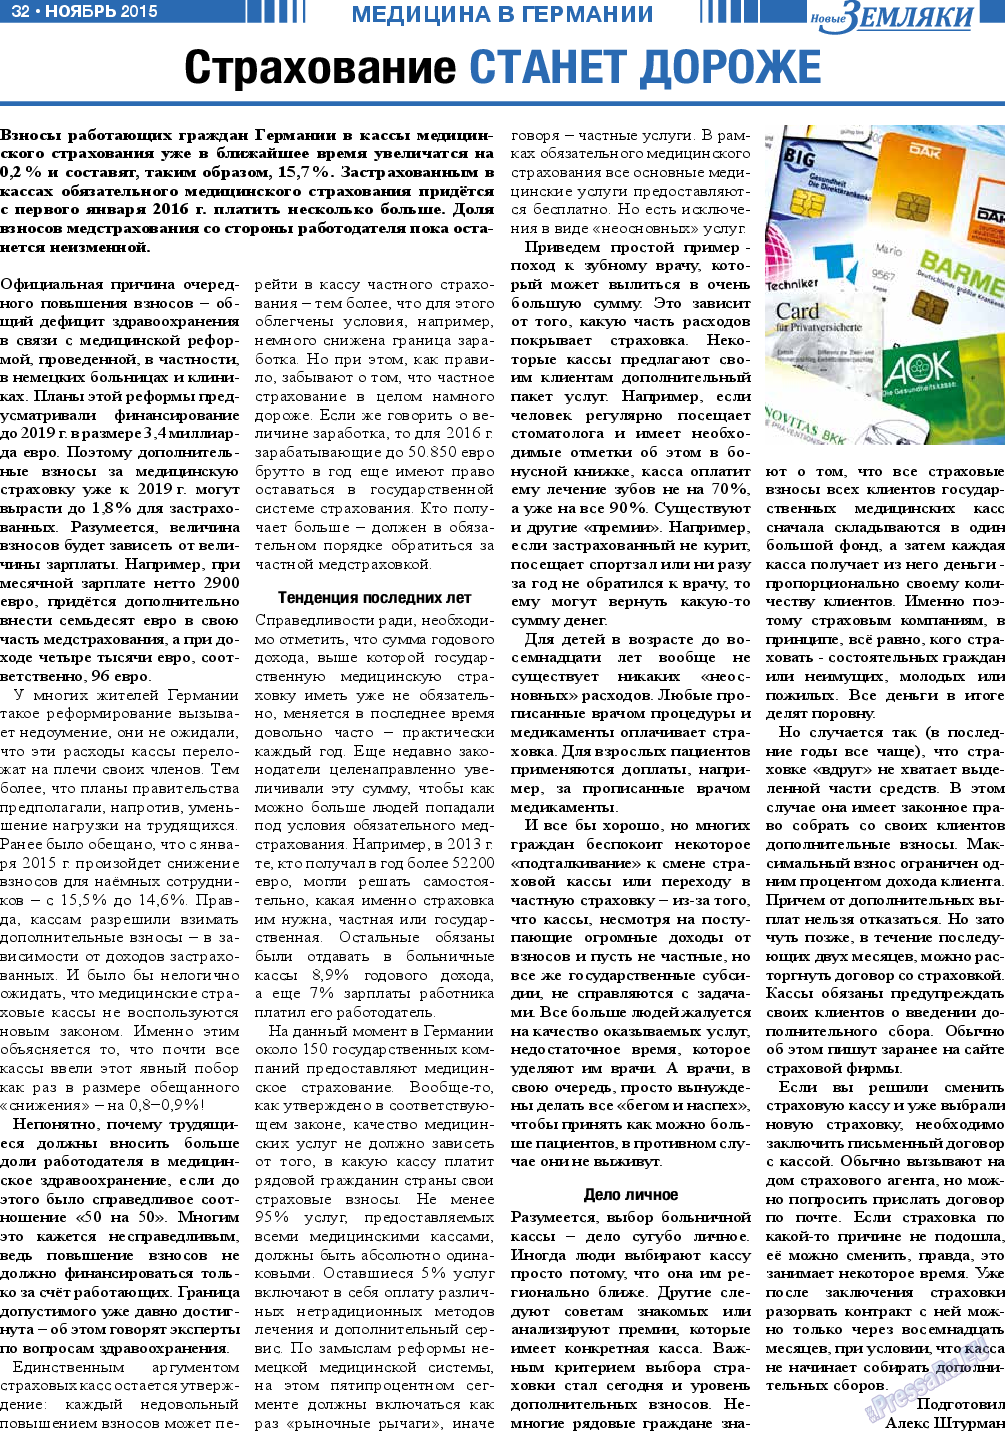 Новые Земляки, газета. 2015 №11 стр.32